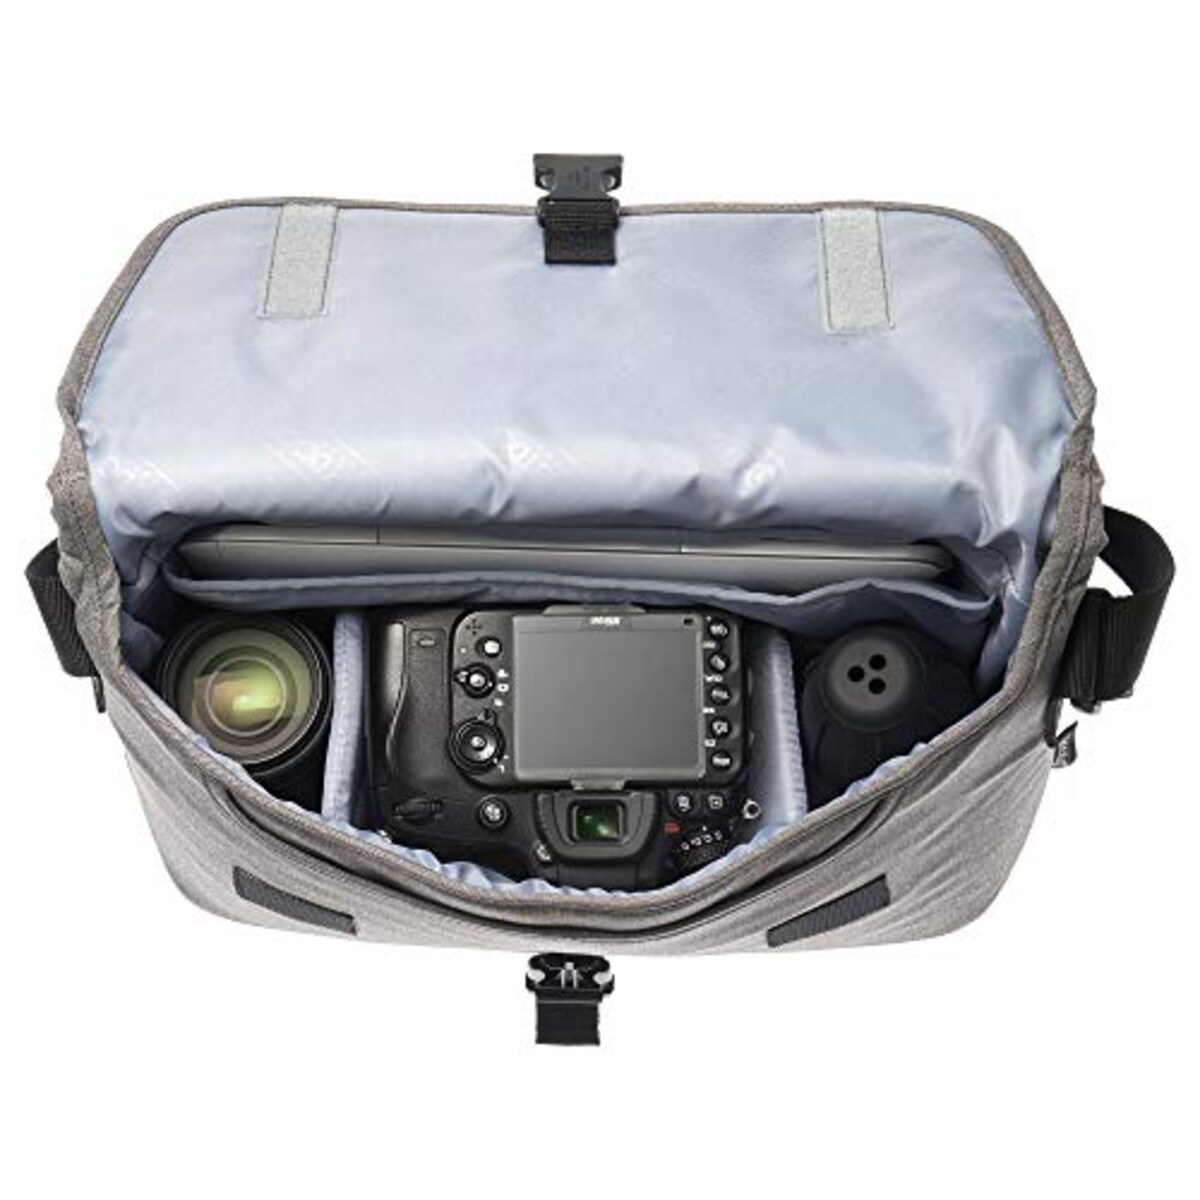  ハクバ OUTDOOR PRODUCTS(アウトドアプロダクツ) カメラバッグ カメラショルダーバッグ05 小型一眼レフ用カメラ用 ヘザーグレー 2ODCSB05HG画像2 